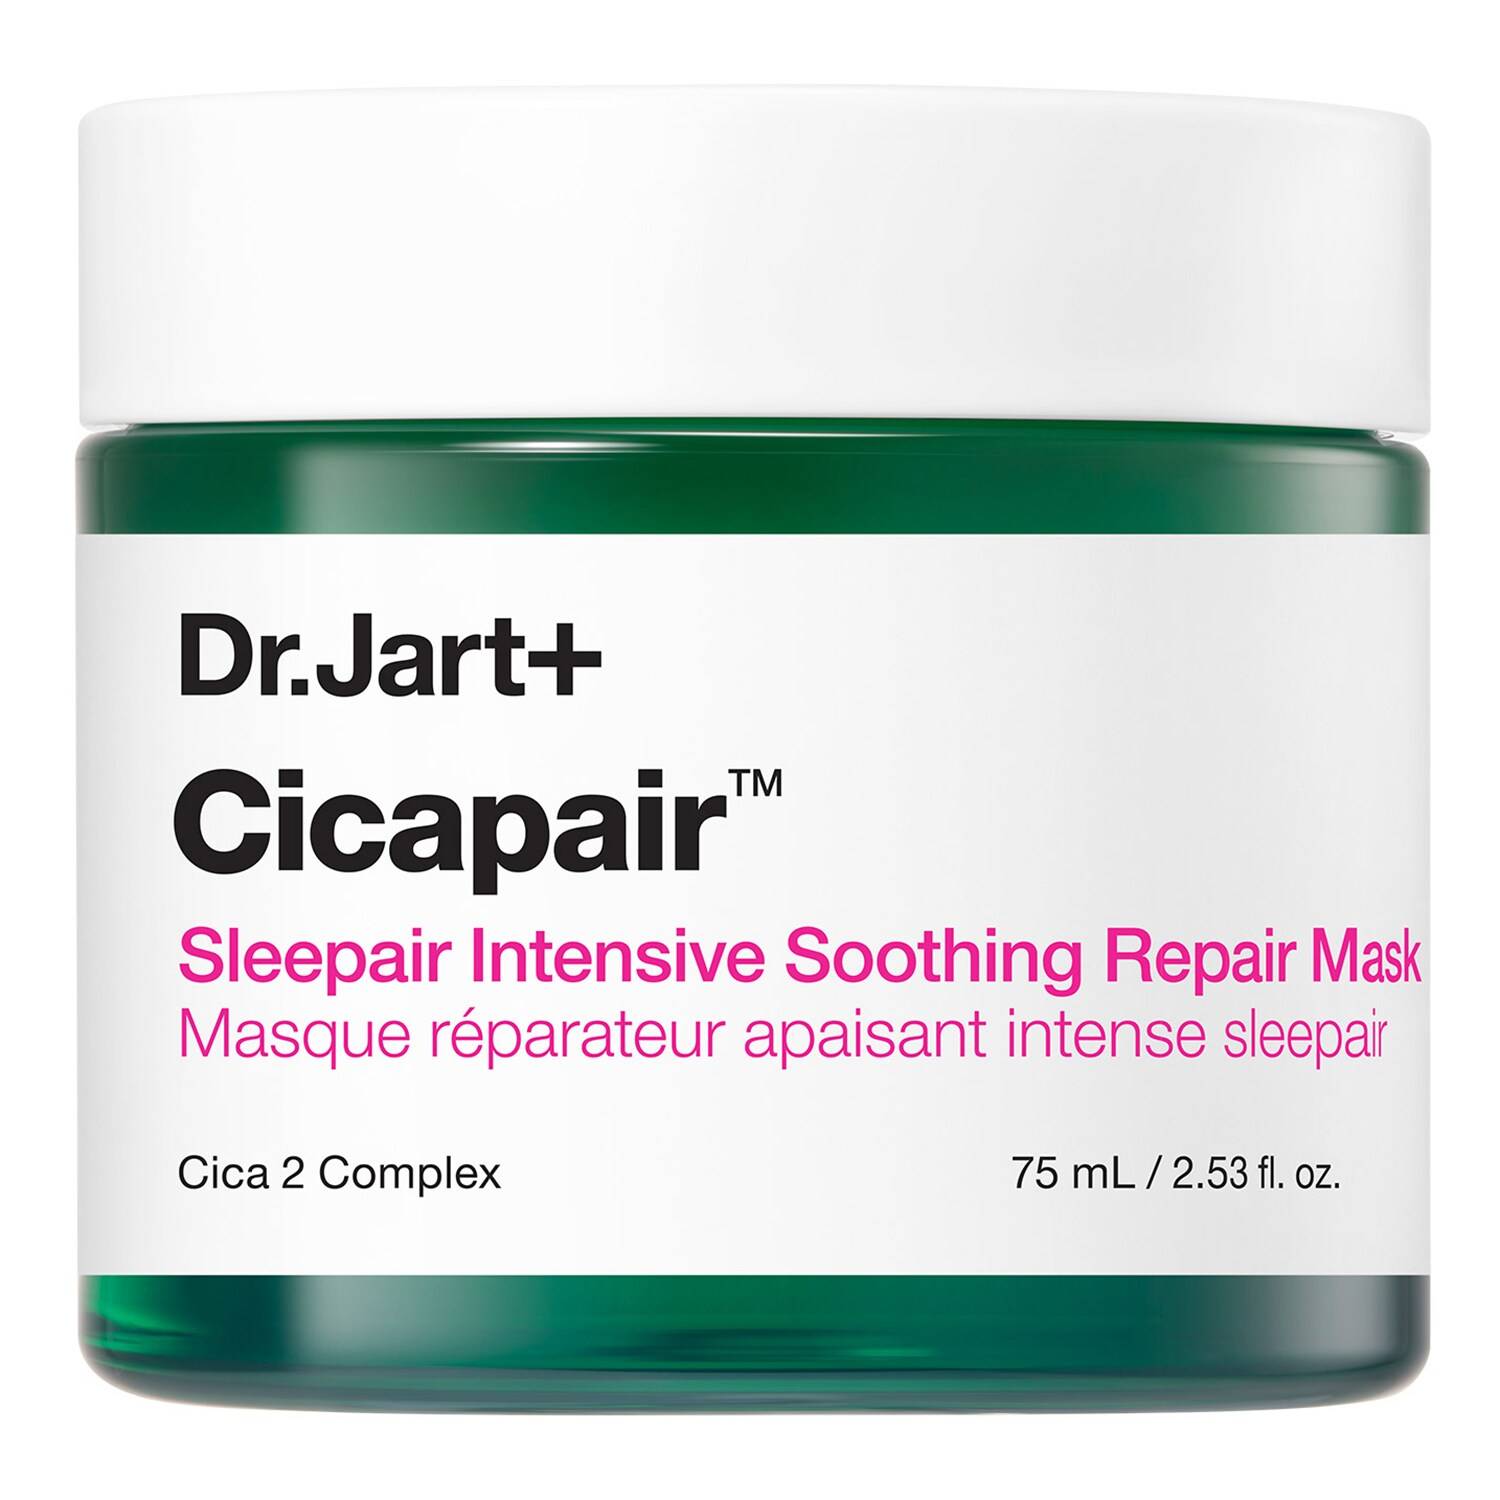 Dr.Jart+ Cicapair - Sleepair Intensive Soothing Repair Mask 75 Ml